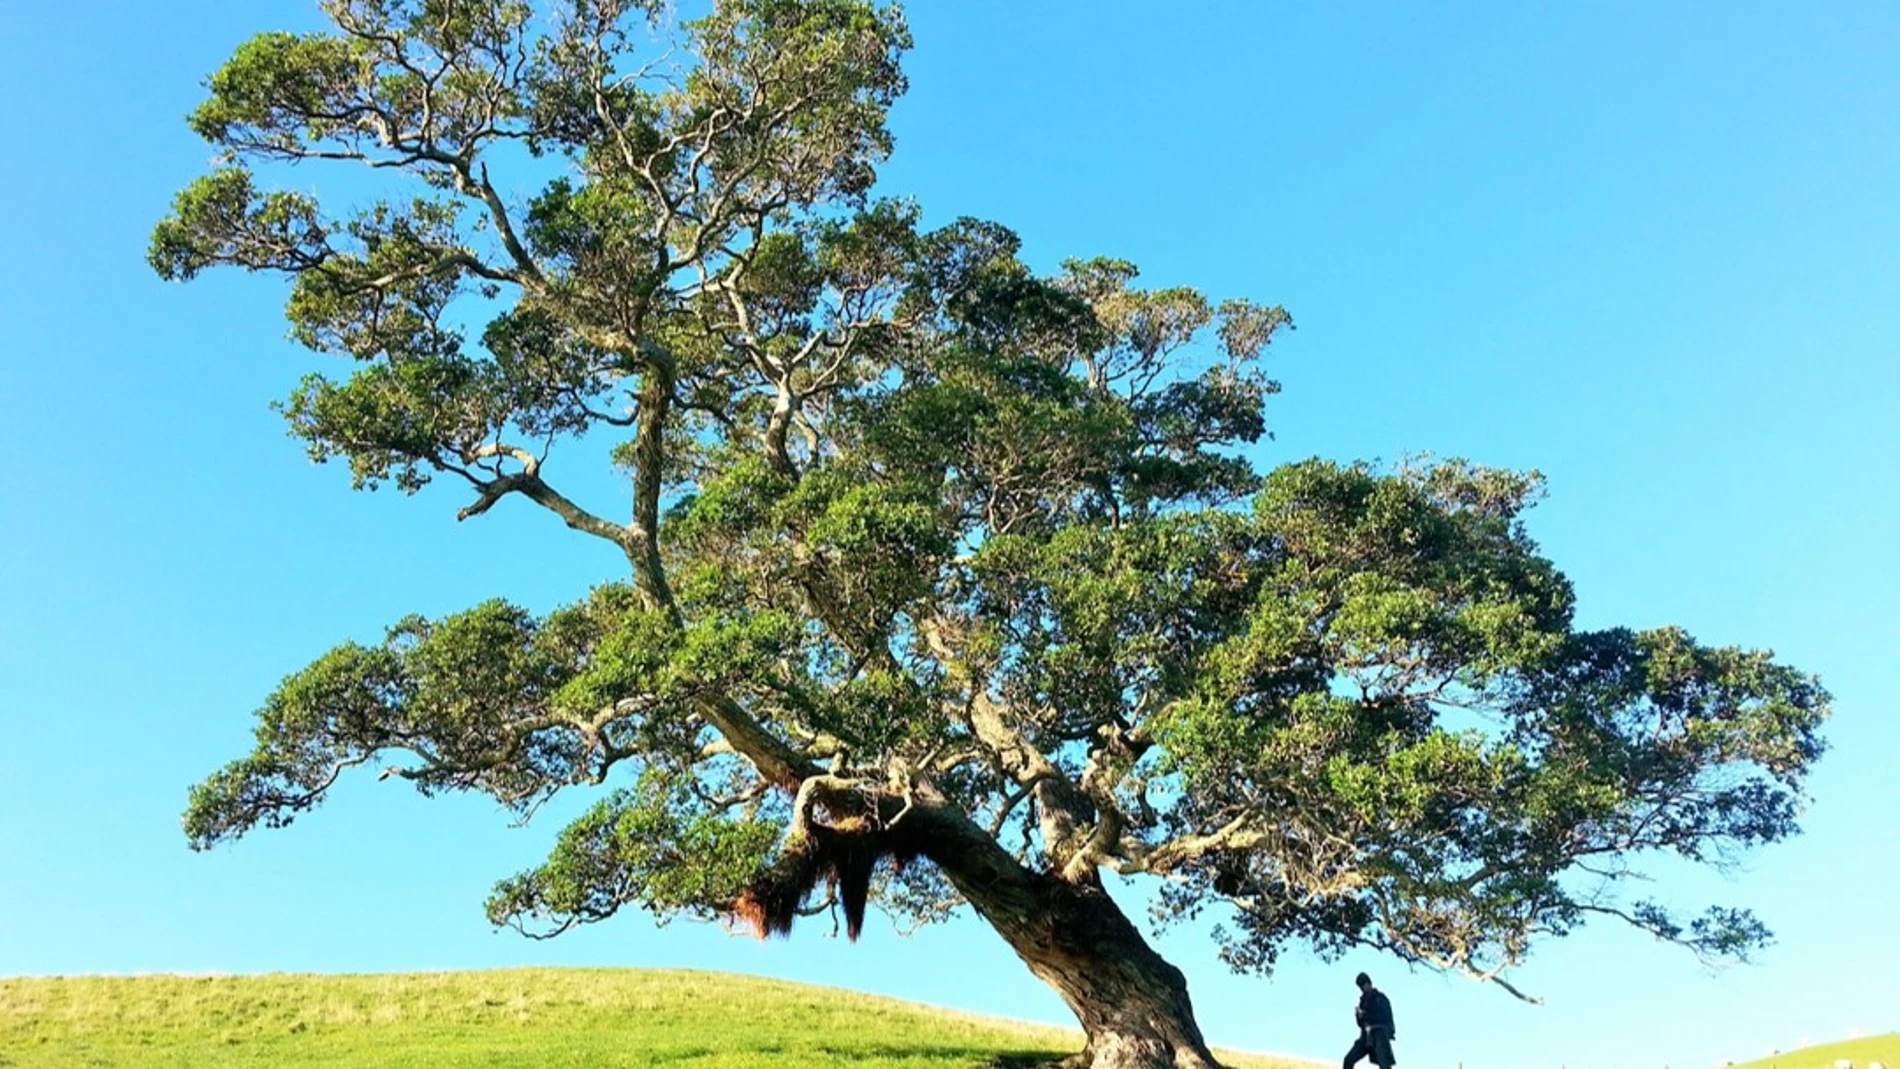 Un árbol inclinado sobre un terreno de hierba, con una persona aproximándose al árbol. Al fondo se ve el cielo azul